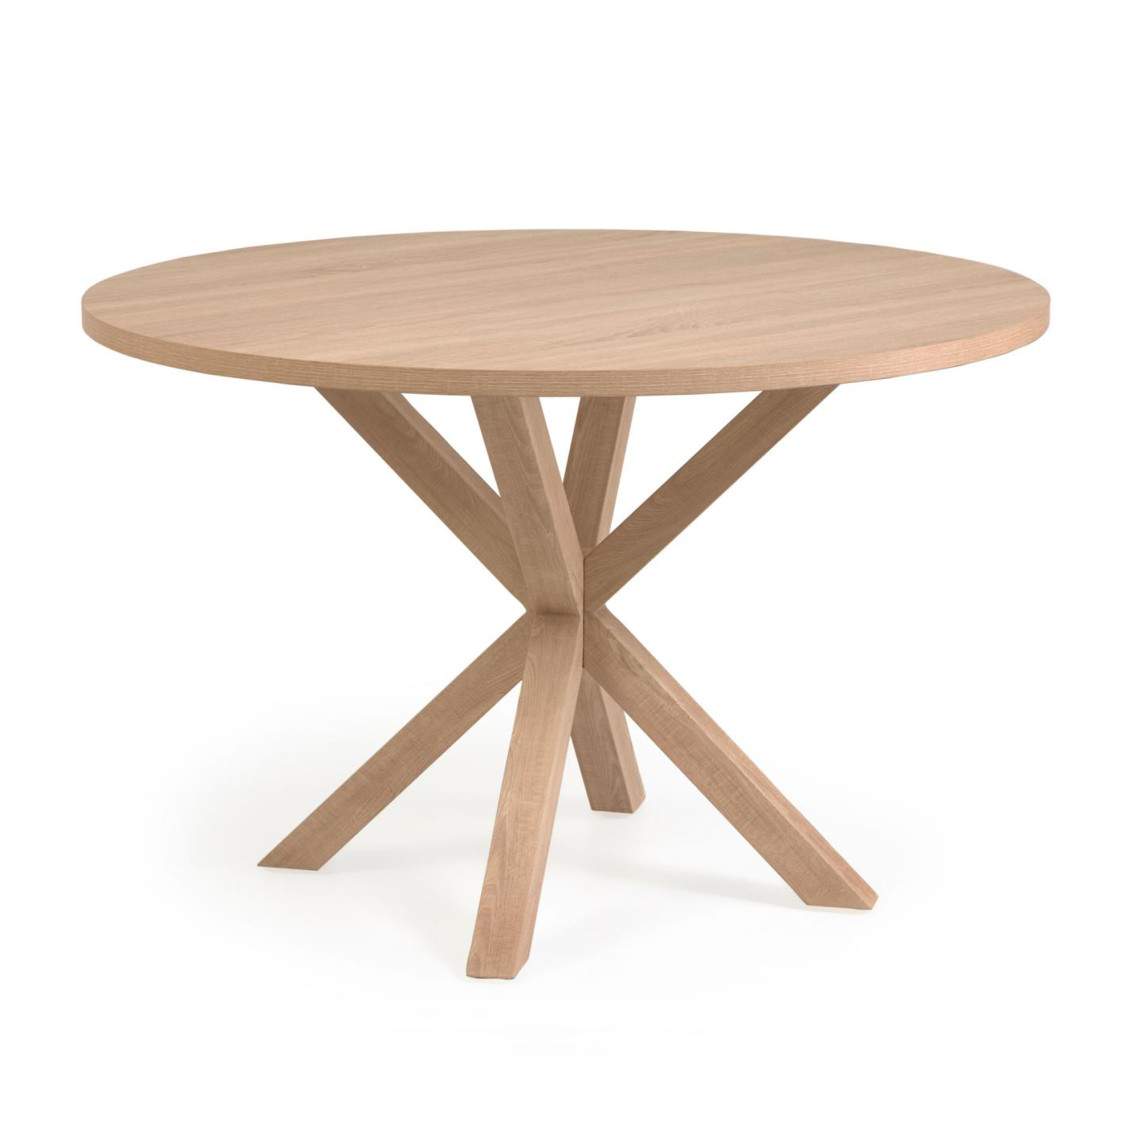 Spisebord A.R - Rund bordplade, Design Melaminskiva med träfinish / Stålben med träfinish